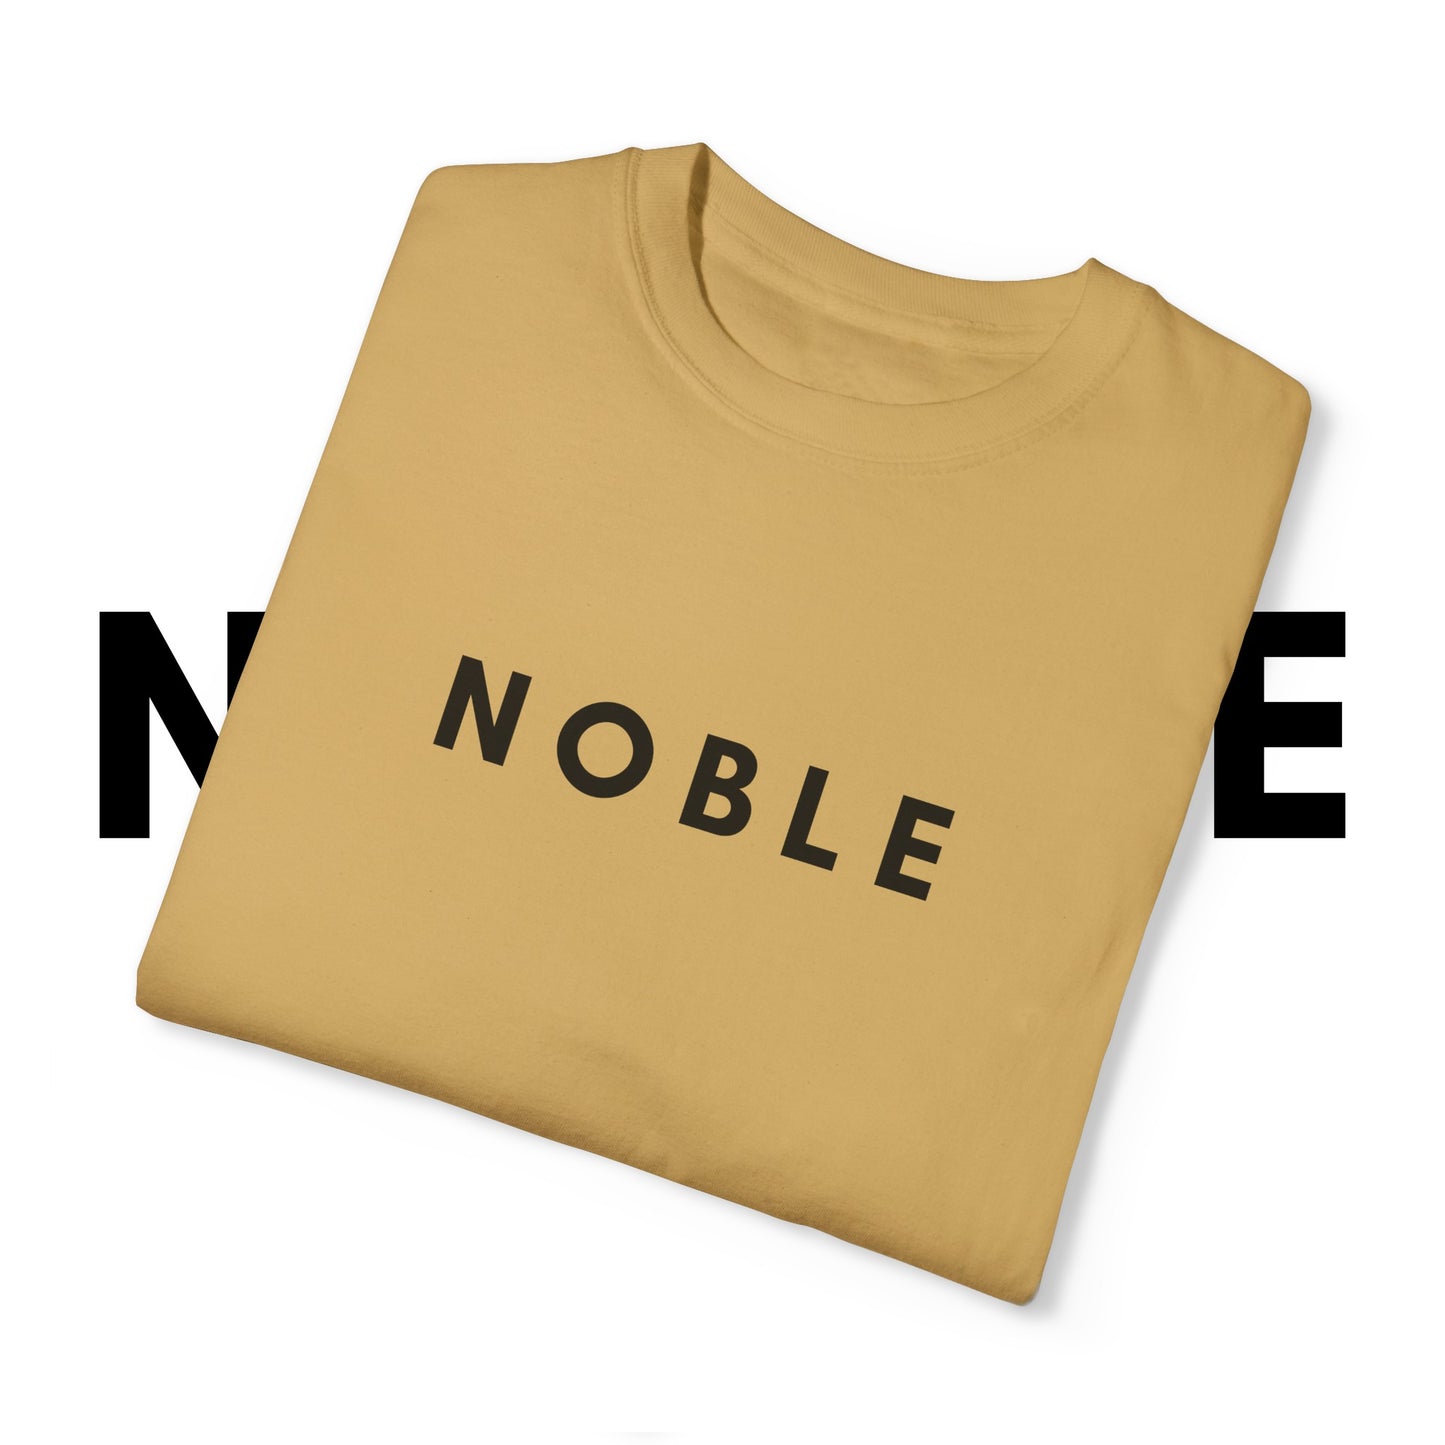 NOBLE T-shirt